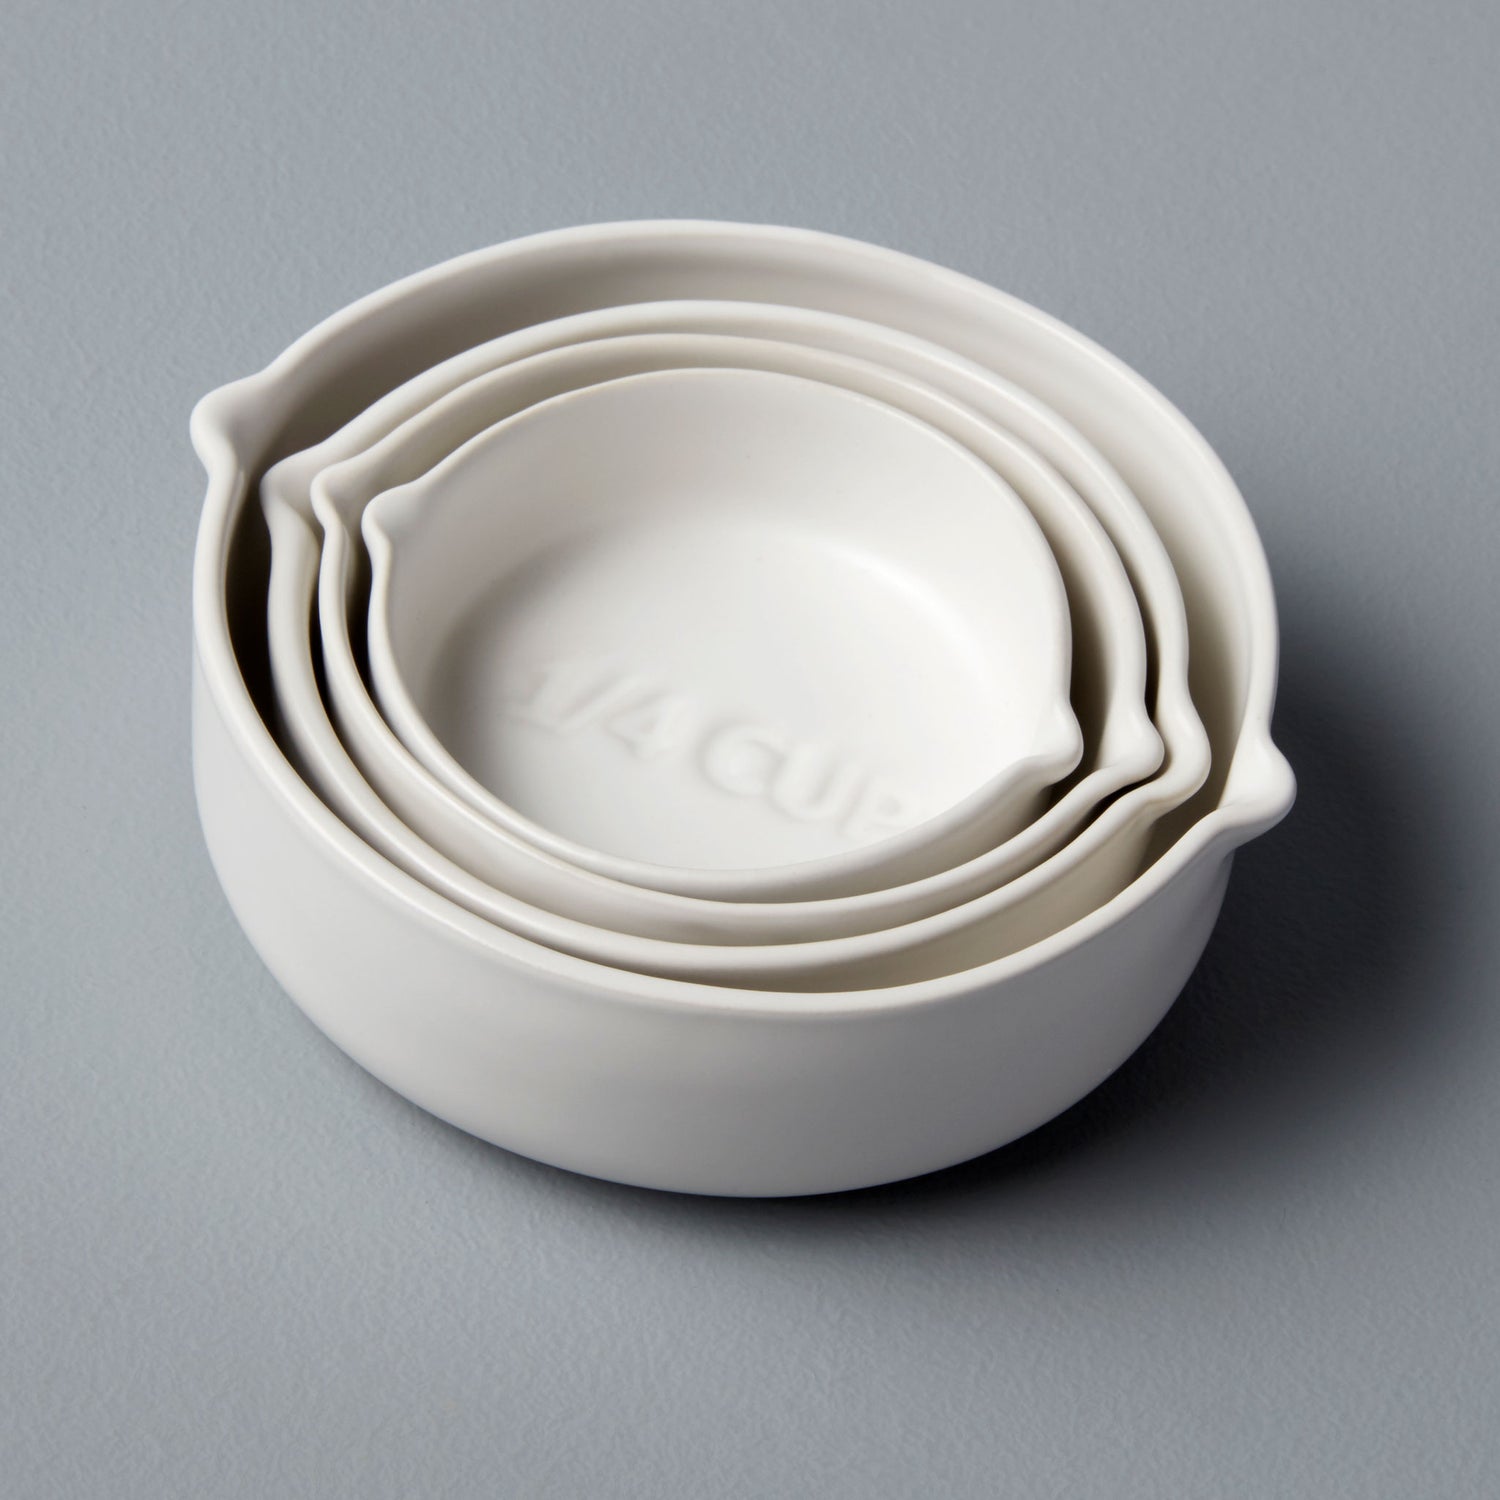 White Ceramic Measuring Cups